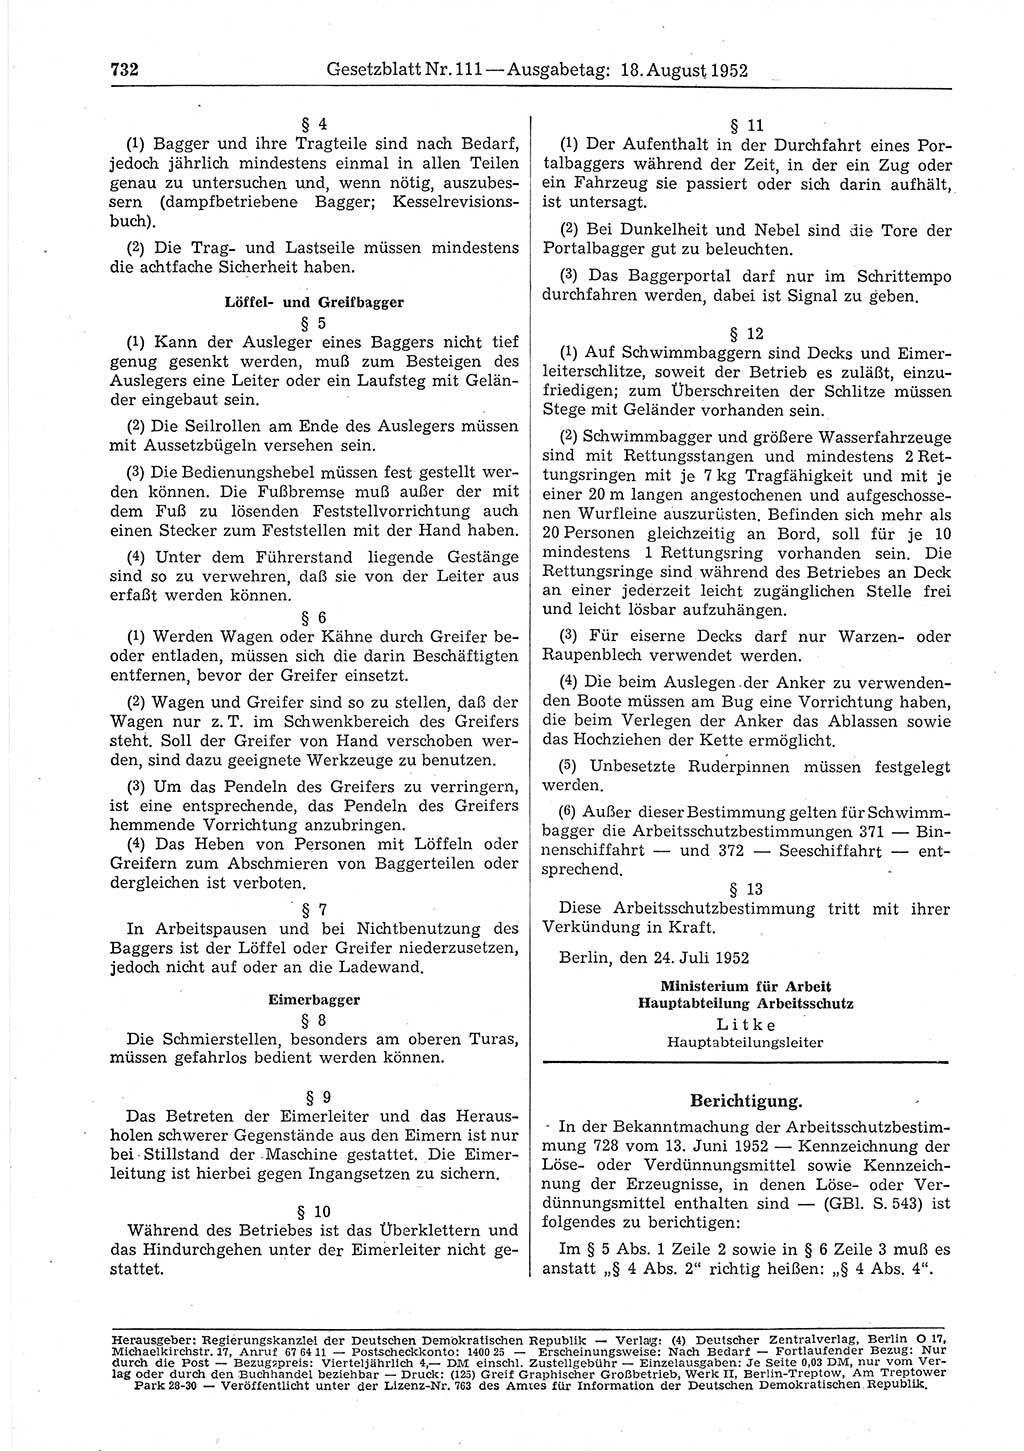 Gesetzblatt (GBl.) der Deutschen Demokratischen Republik (DDR) 1952, Seite 732 (GBl. DDR 1952, S. 732)